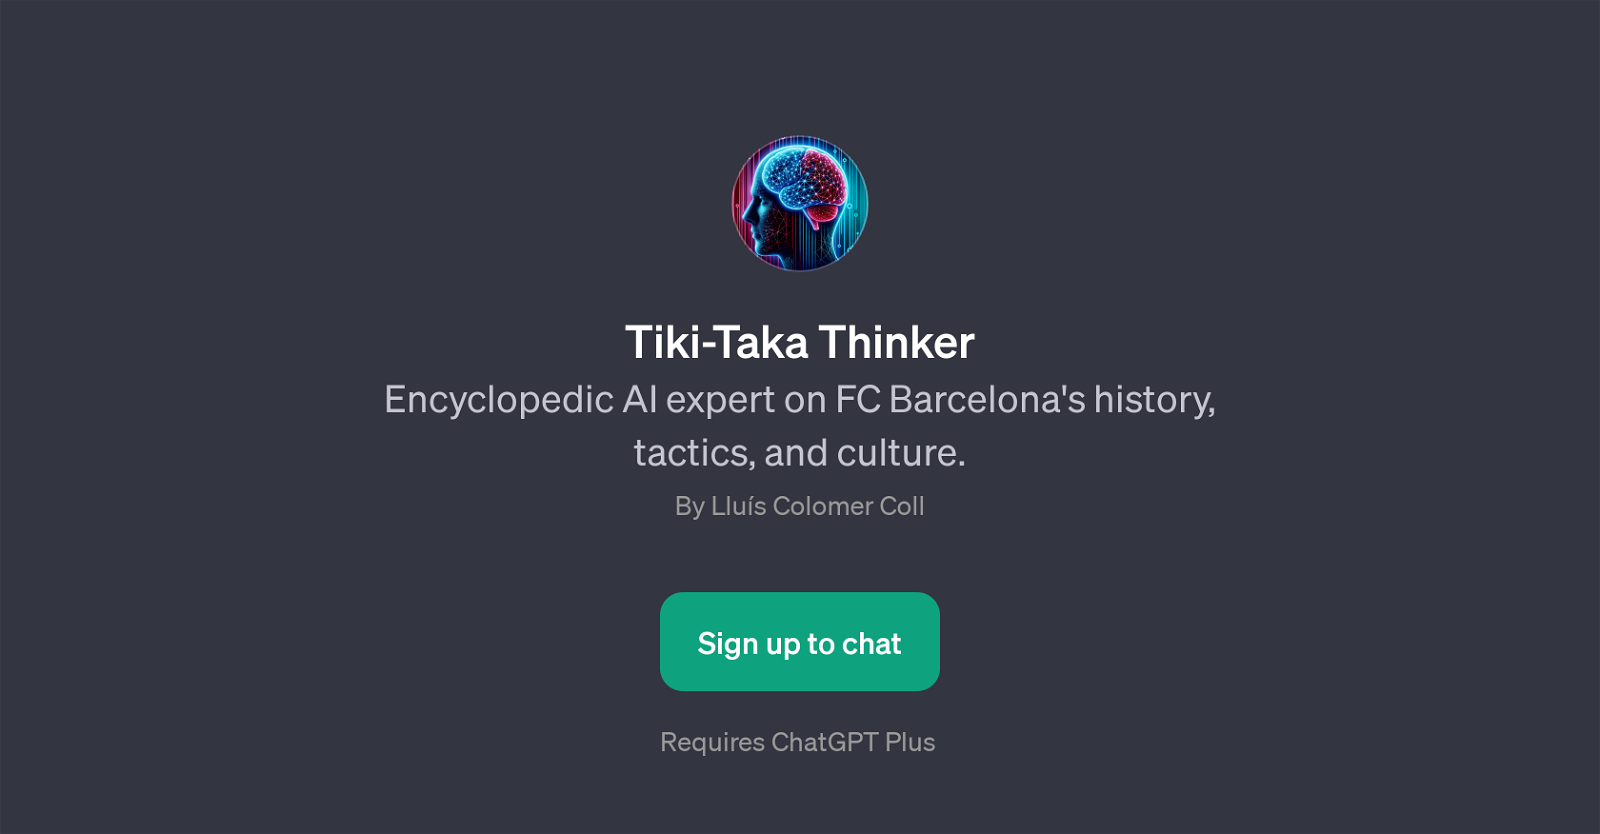 Tiki-Taka Thinker website